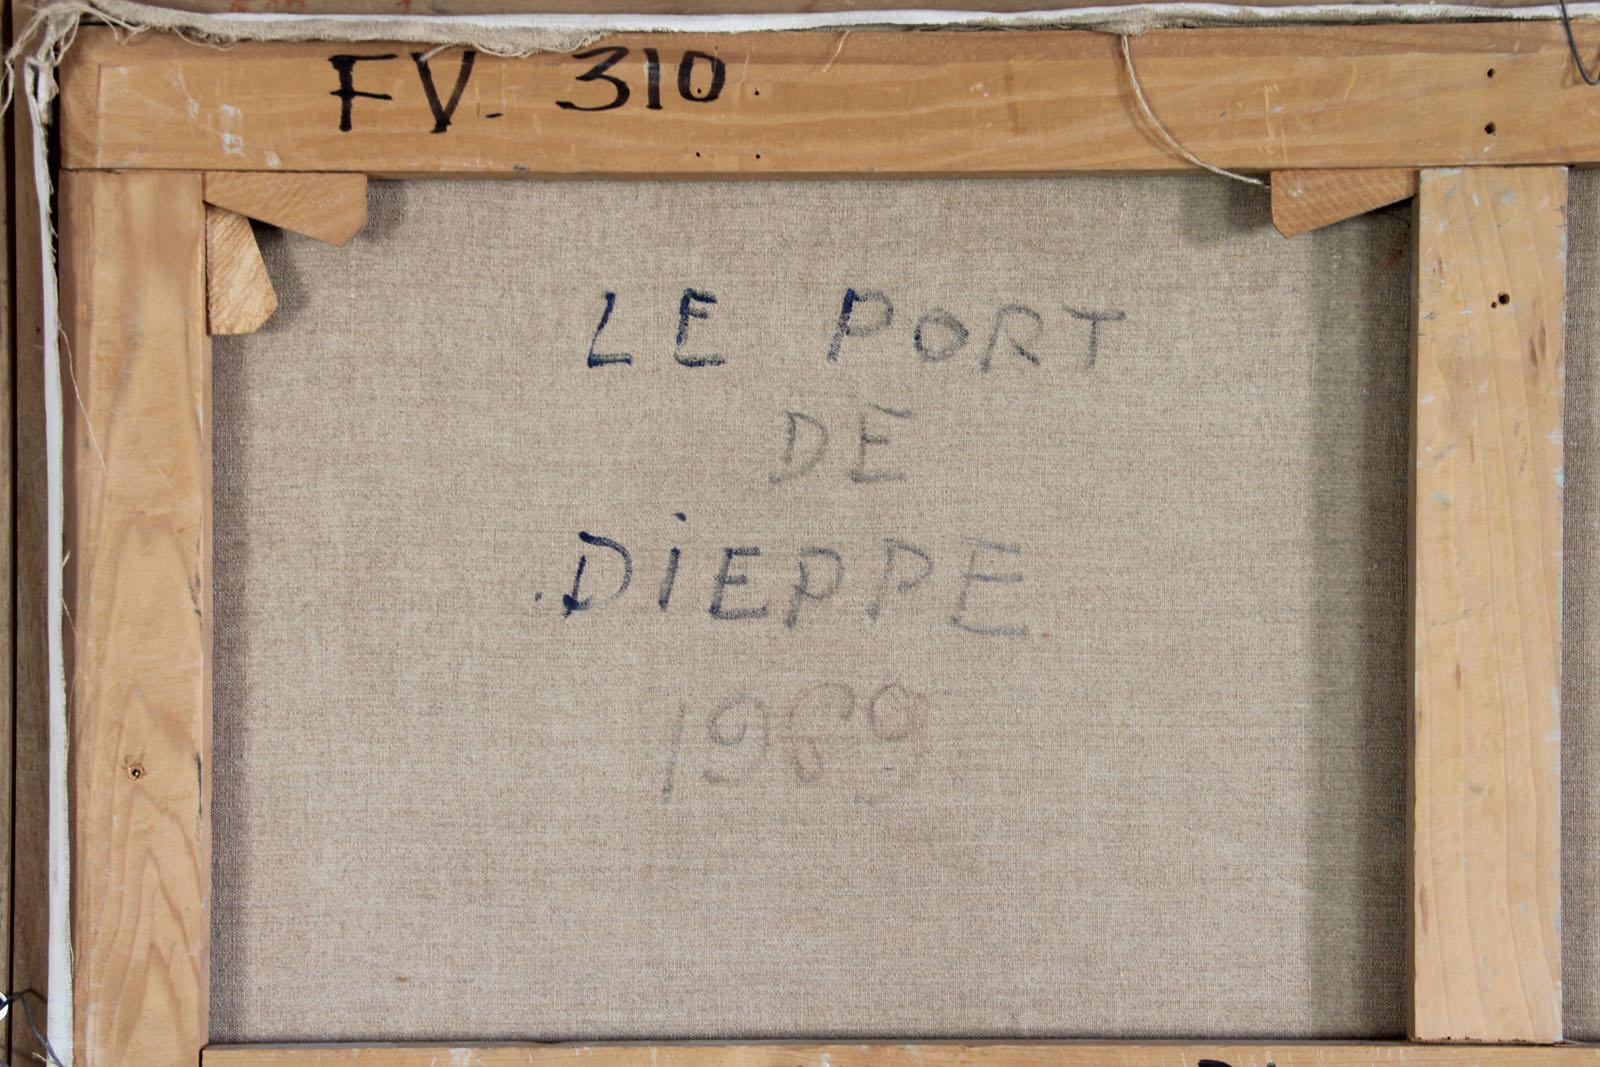 Le port de Dieppe - Post-Impressionist Painting by Jacques Bouyssou